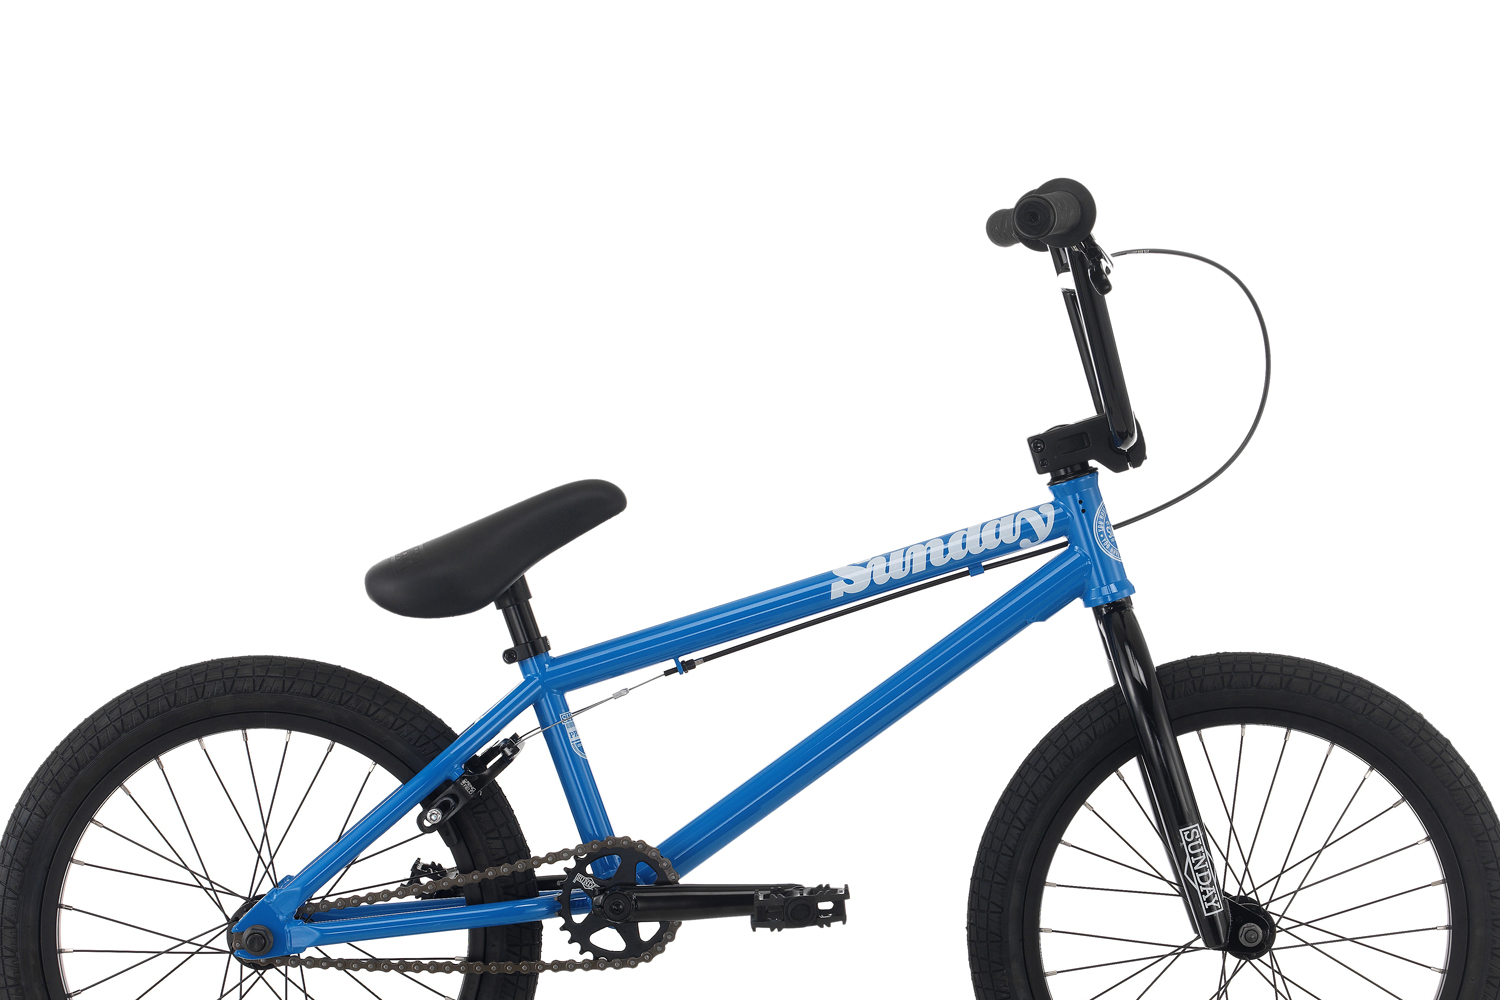 18 inch bmx bike